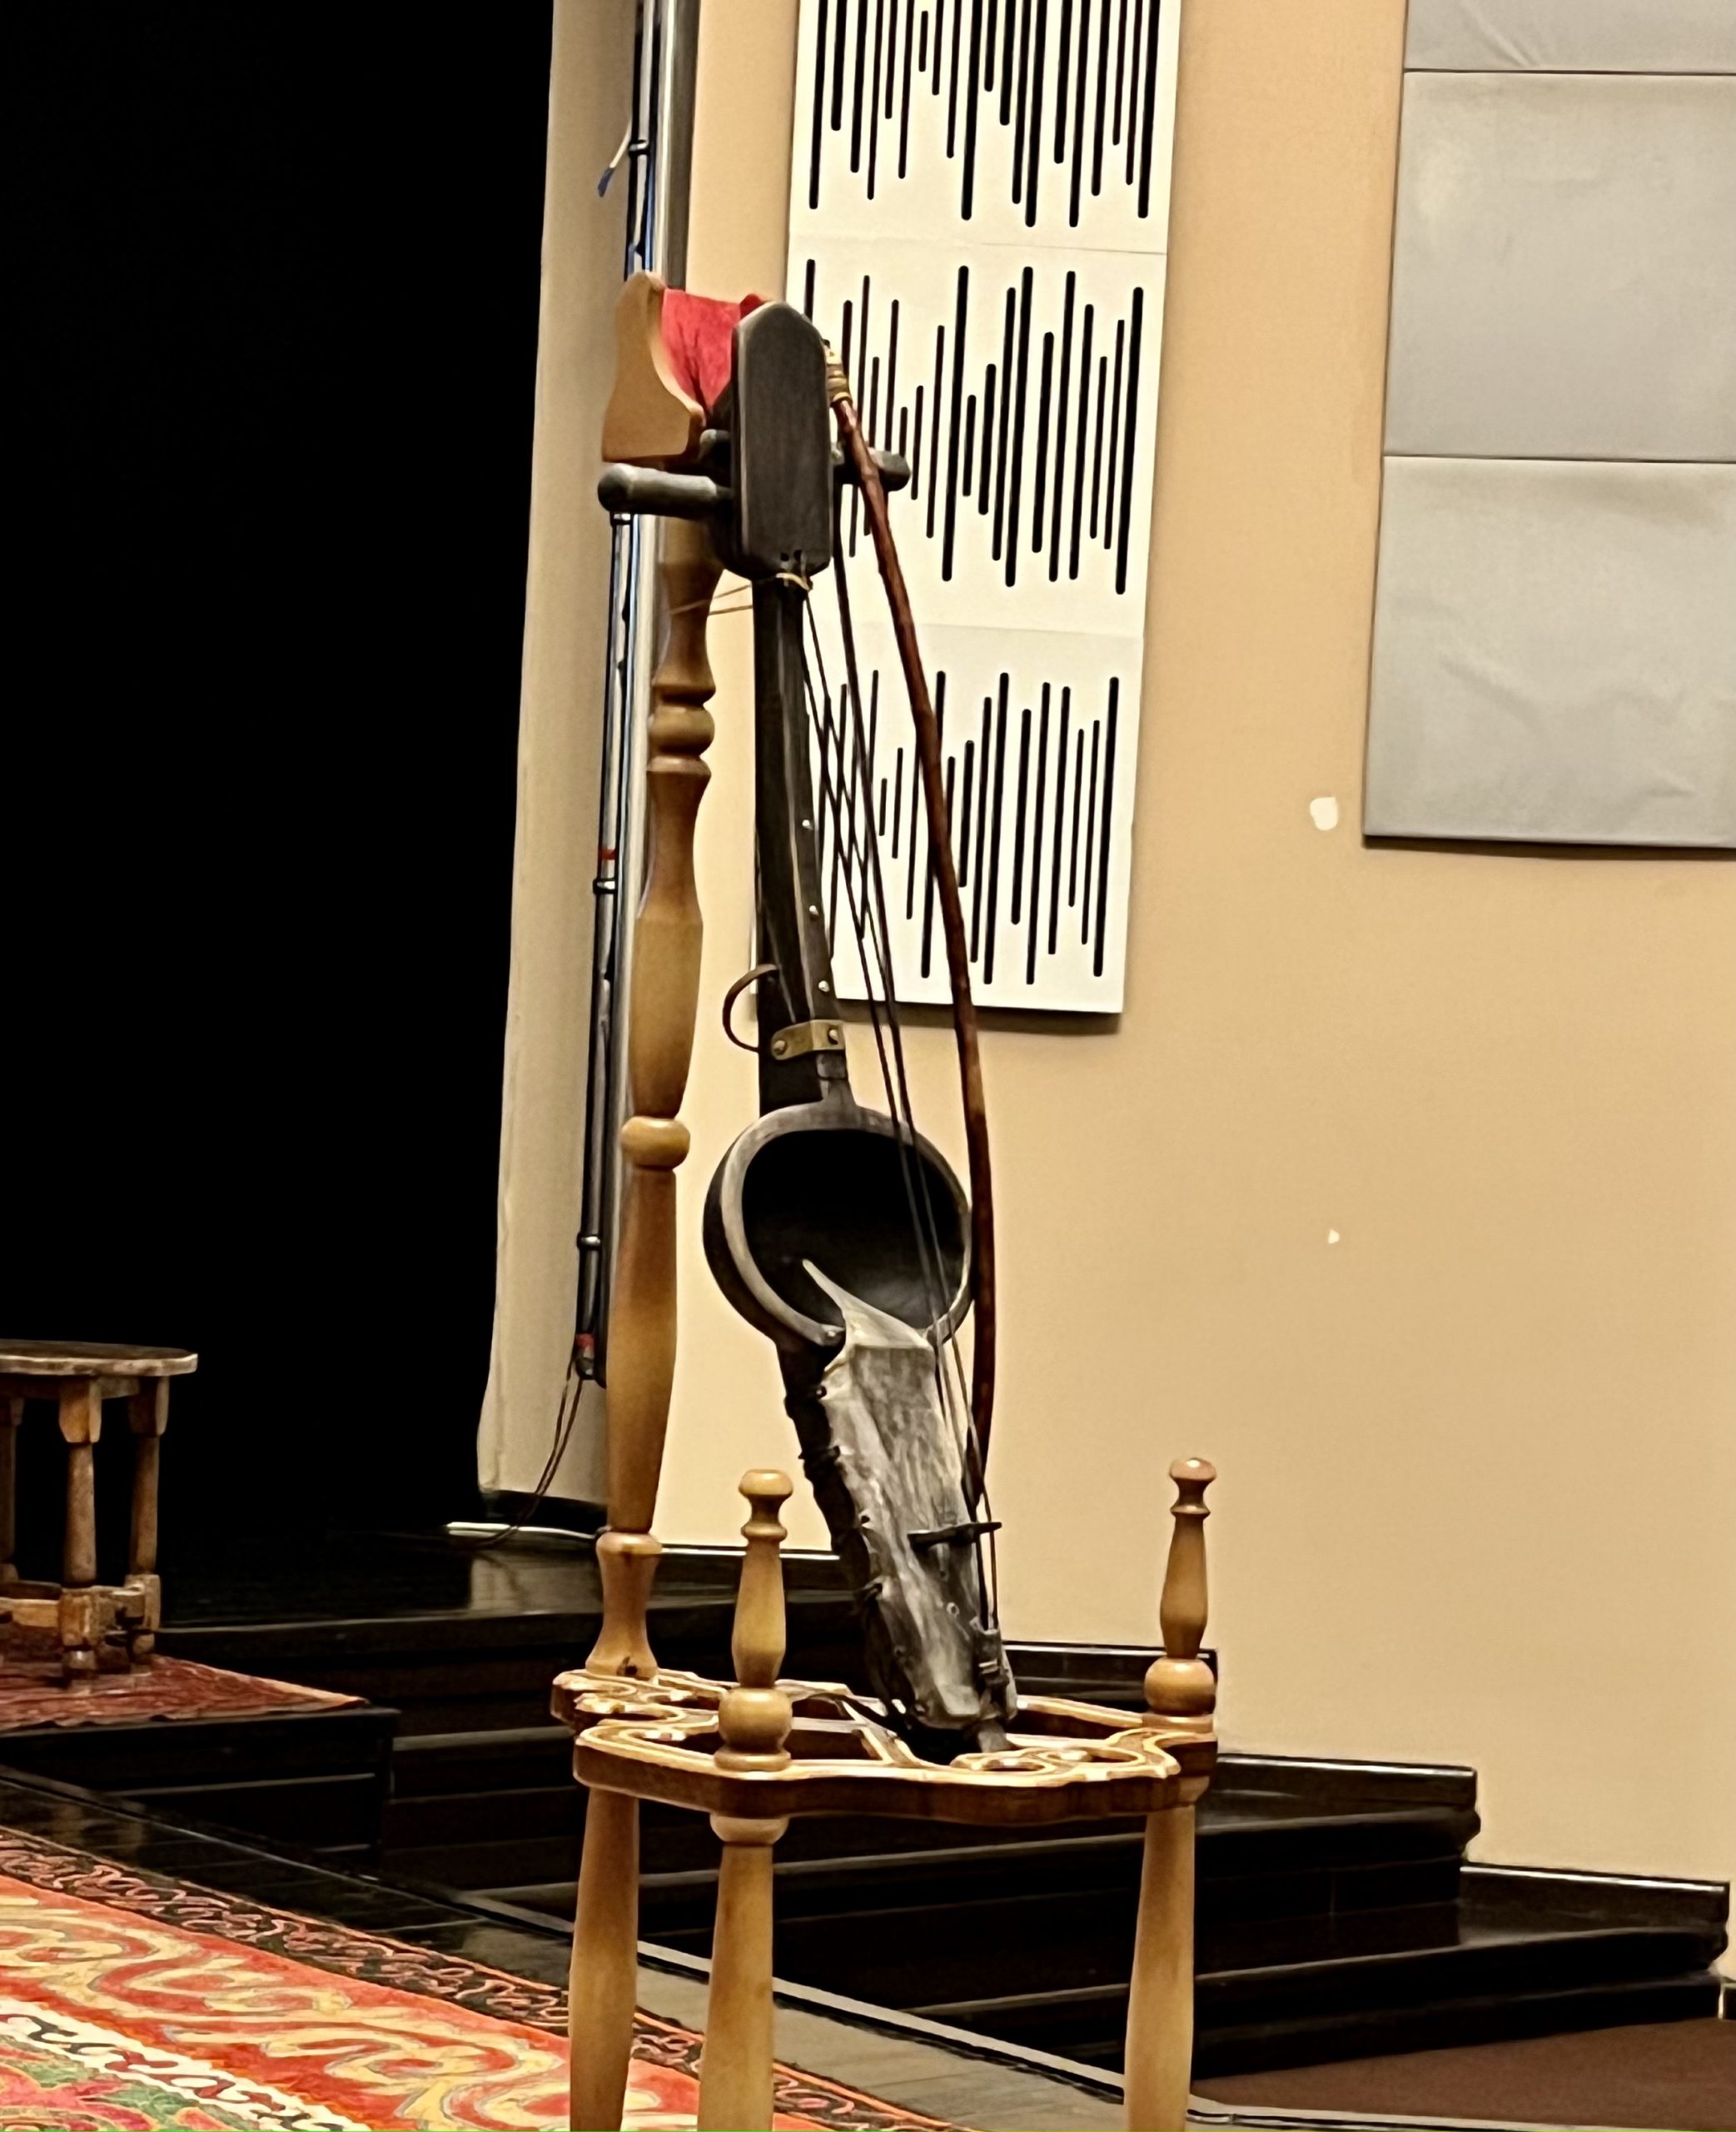 Ықылас Дүкенұлының 180 жылдығына арналған «Ықыластың қара қобызы» дәстүрлі музыкалық кеші